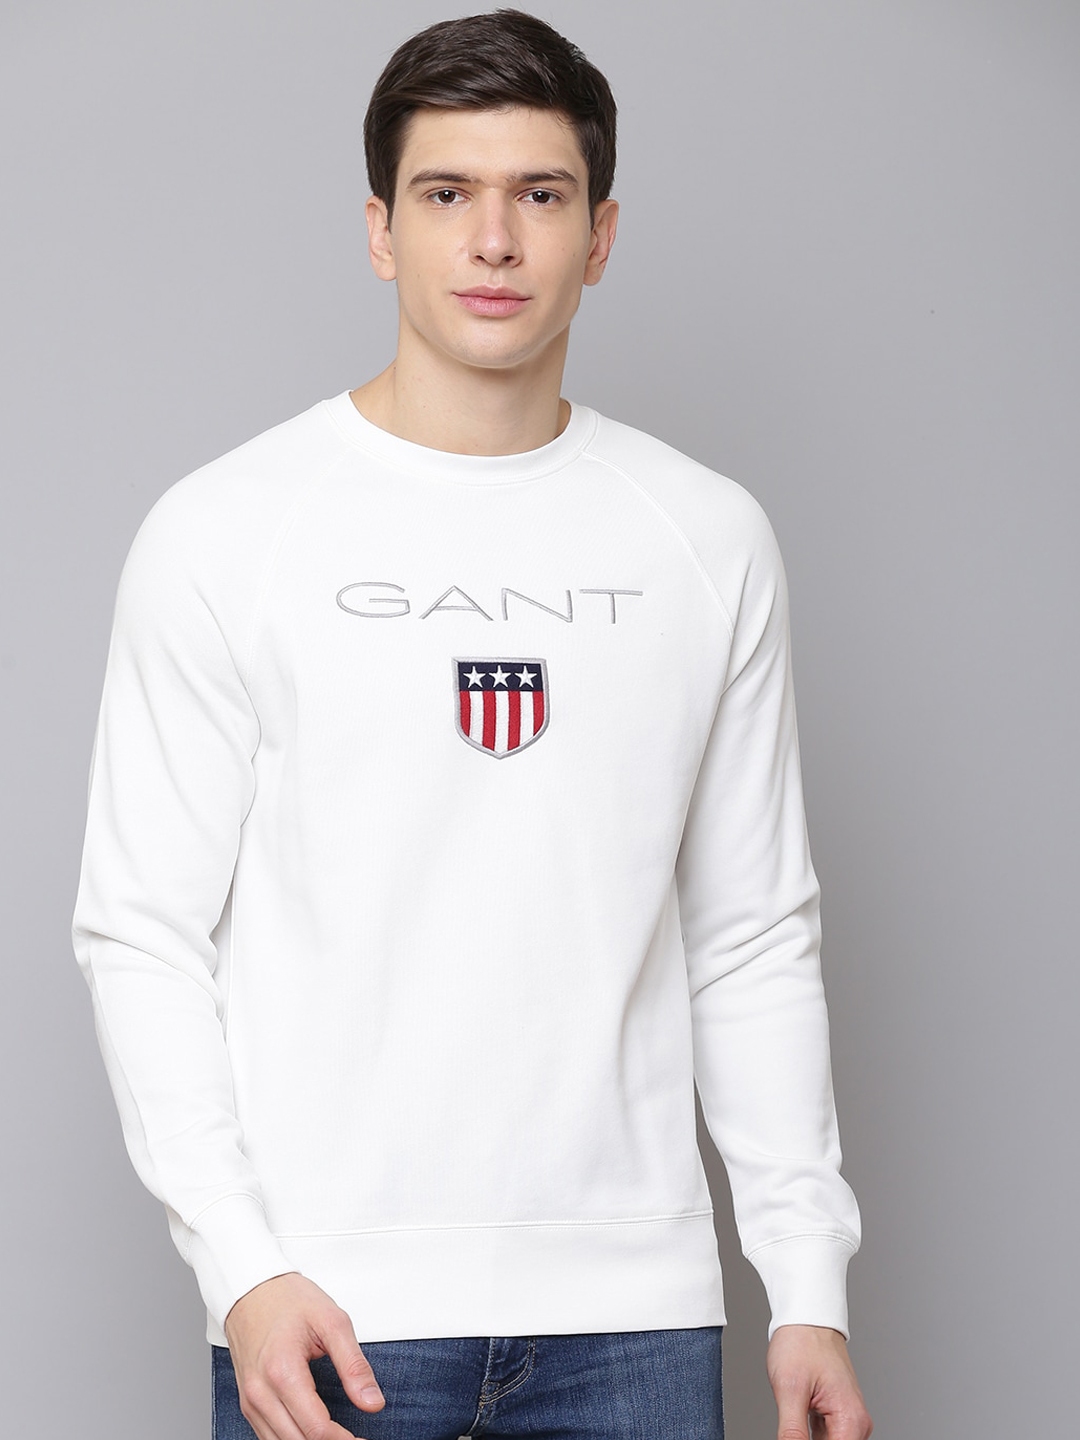 Buy GANT Men White & Red Printed Sweatshirt - Sweatshirts for Men ...